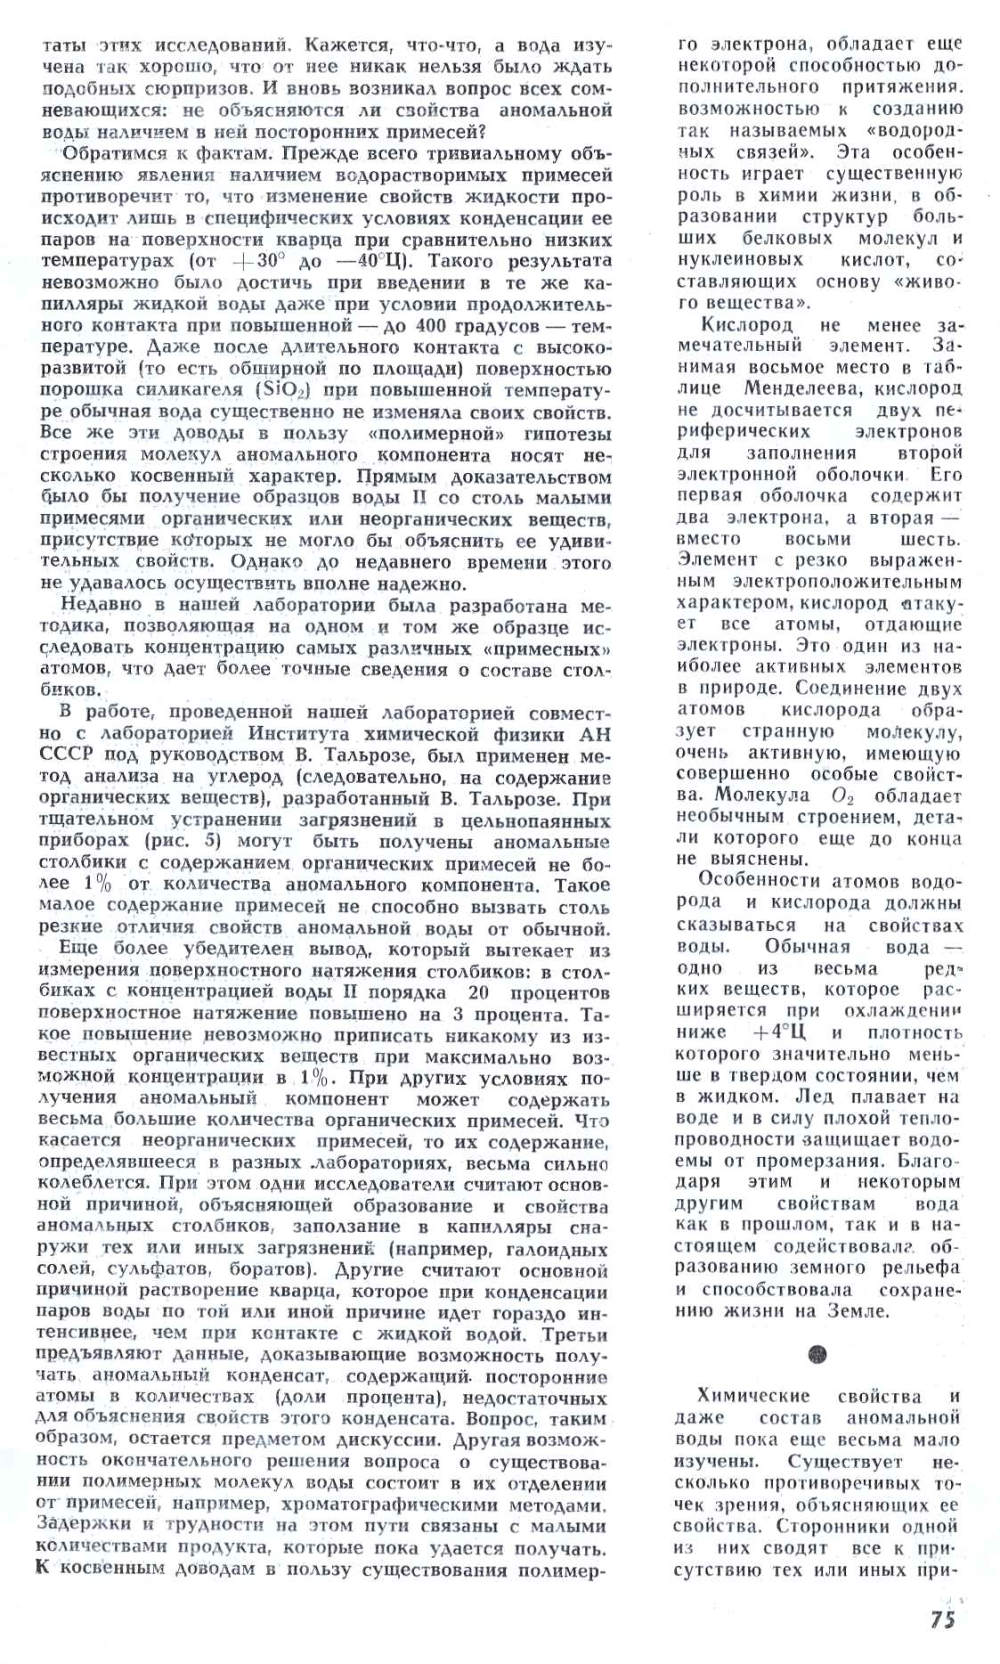 Аномальная вода — гипотезы и факты. Б. Дерягин. Наука и жизнь, 1972, №4, с.70-76. Фотокопия №6